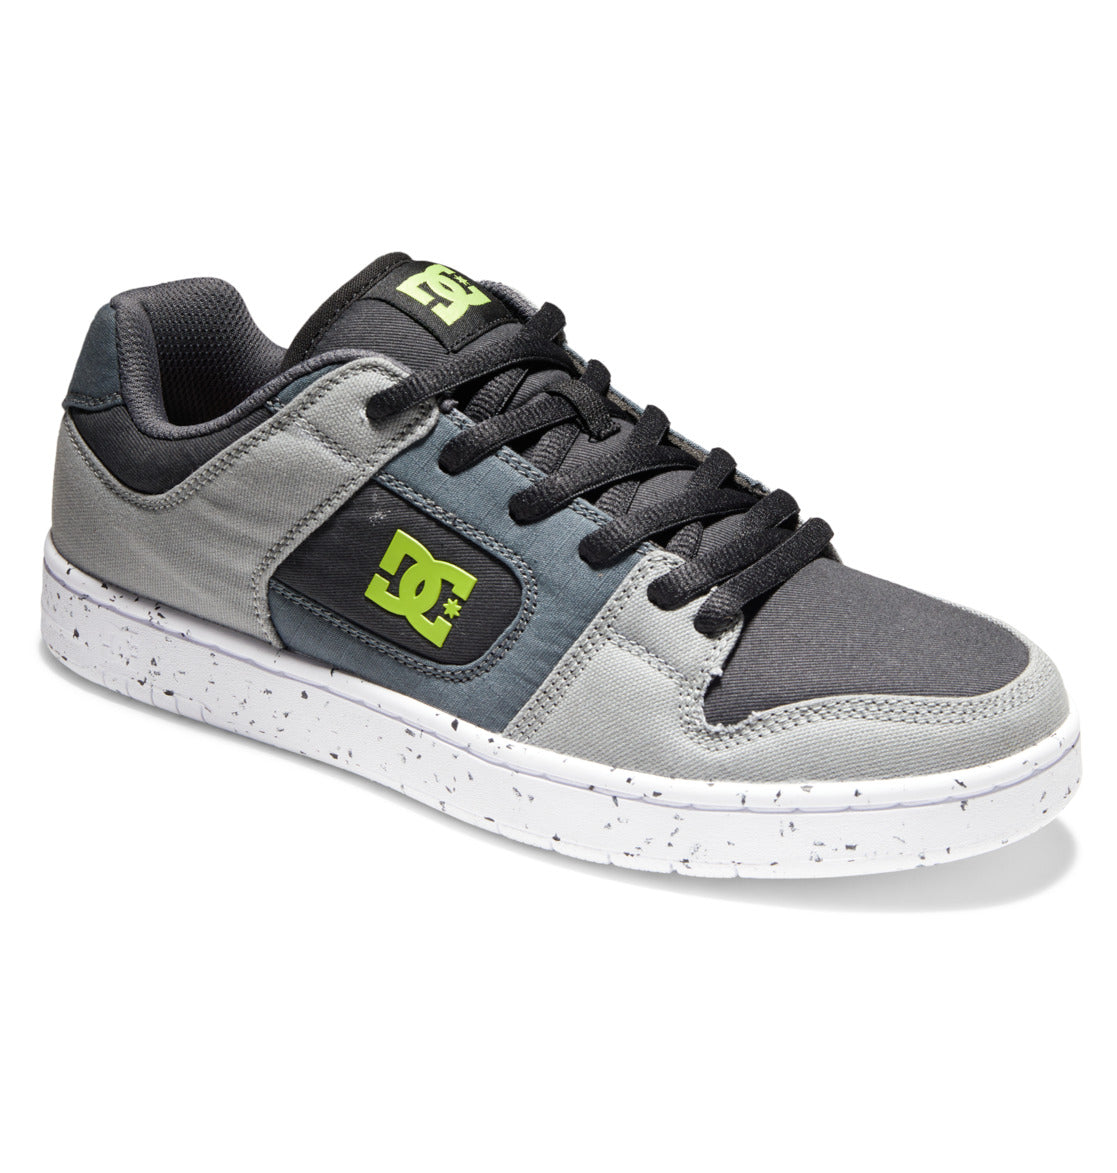 Zapatillas Dc Shoes Manteca 4 Zero Waste Black/grey/green